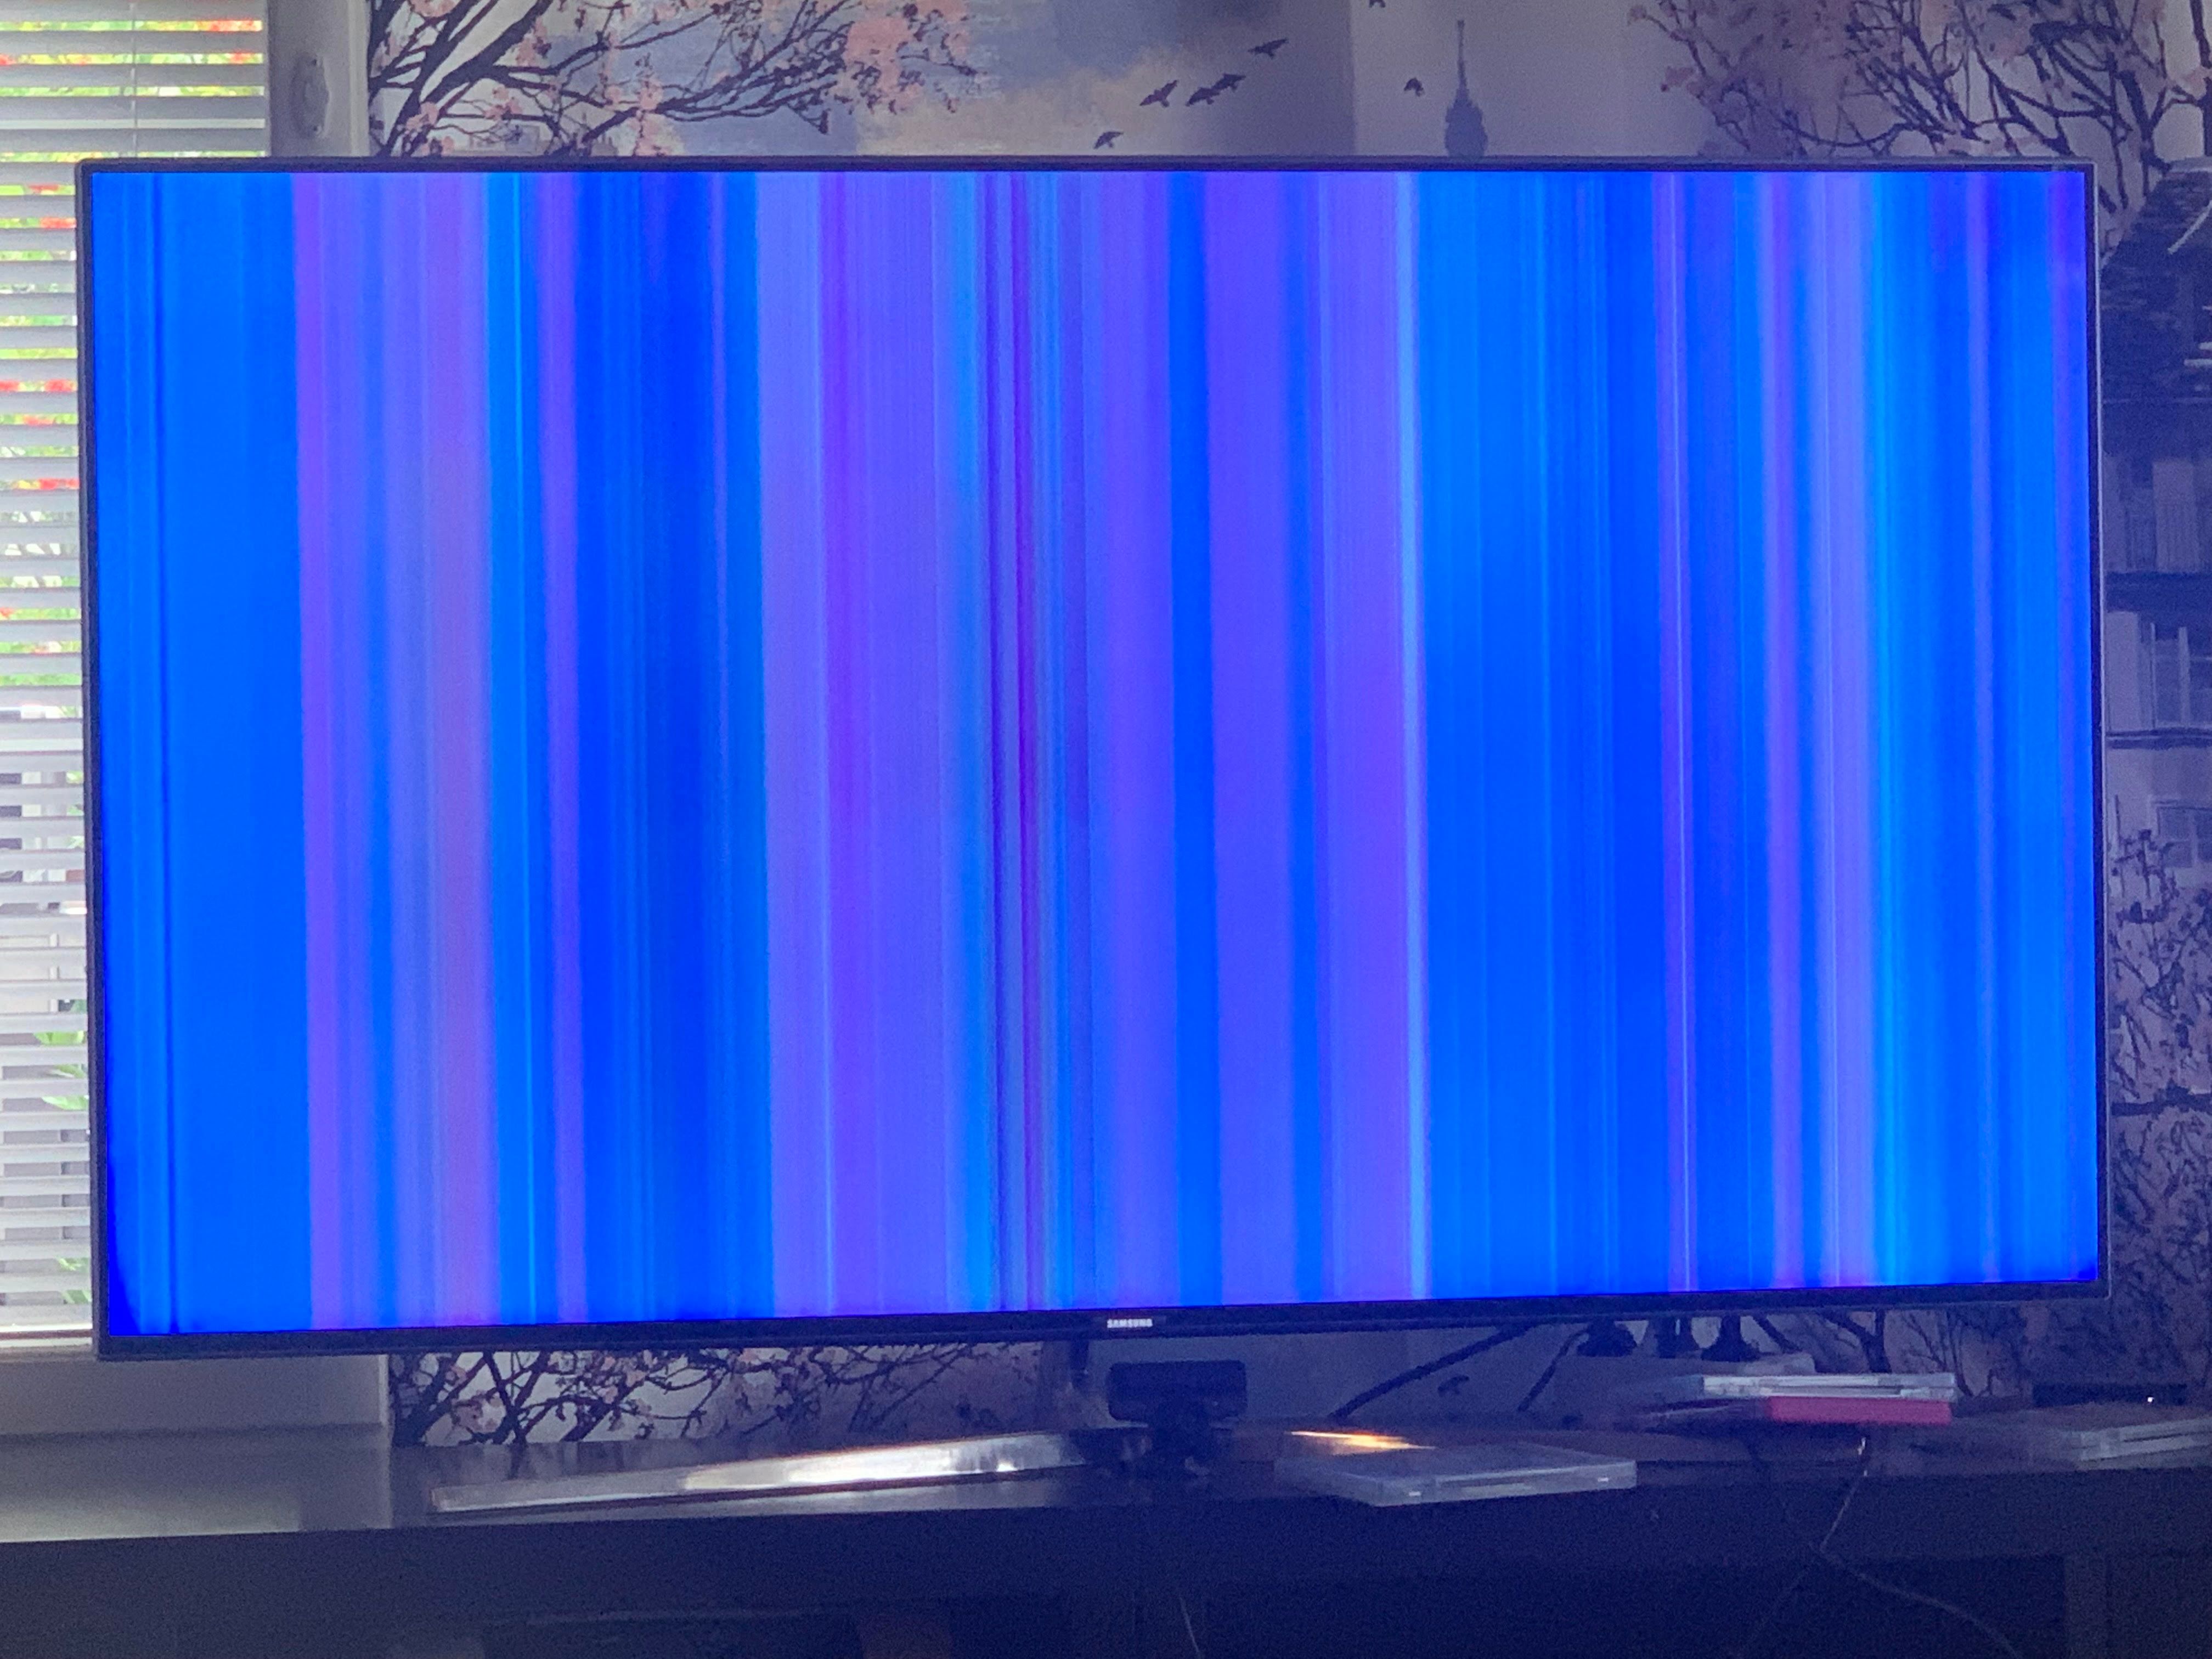 Вертикальная полоса телевизор самсунг. Цветные полосы на экране телевизора. Android TV вертикальная полоса. Вертикальная полоса на телевизоре самсунг 2012. Ue40j5200au зеленые вертикальные полосы.